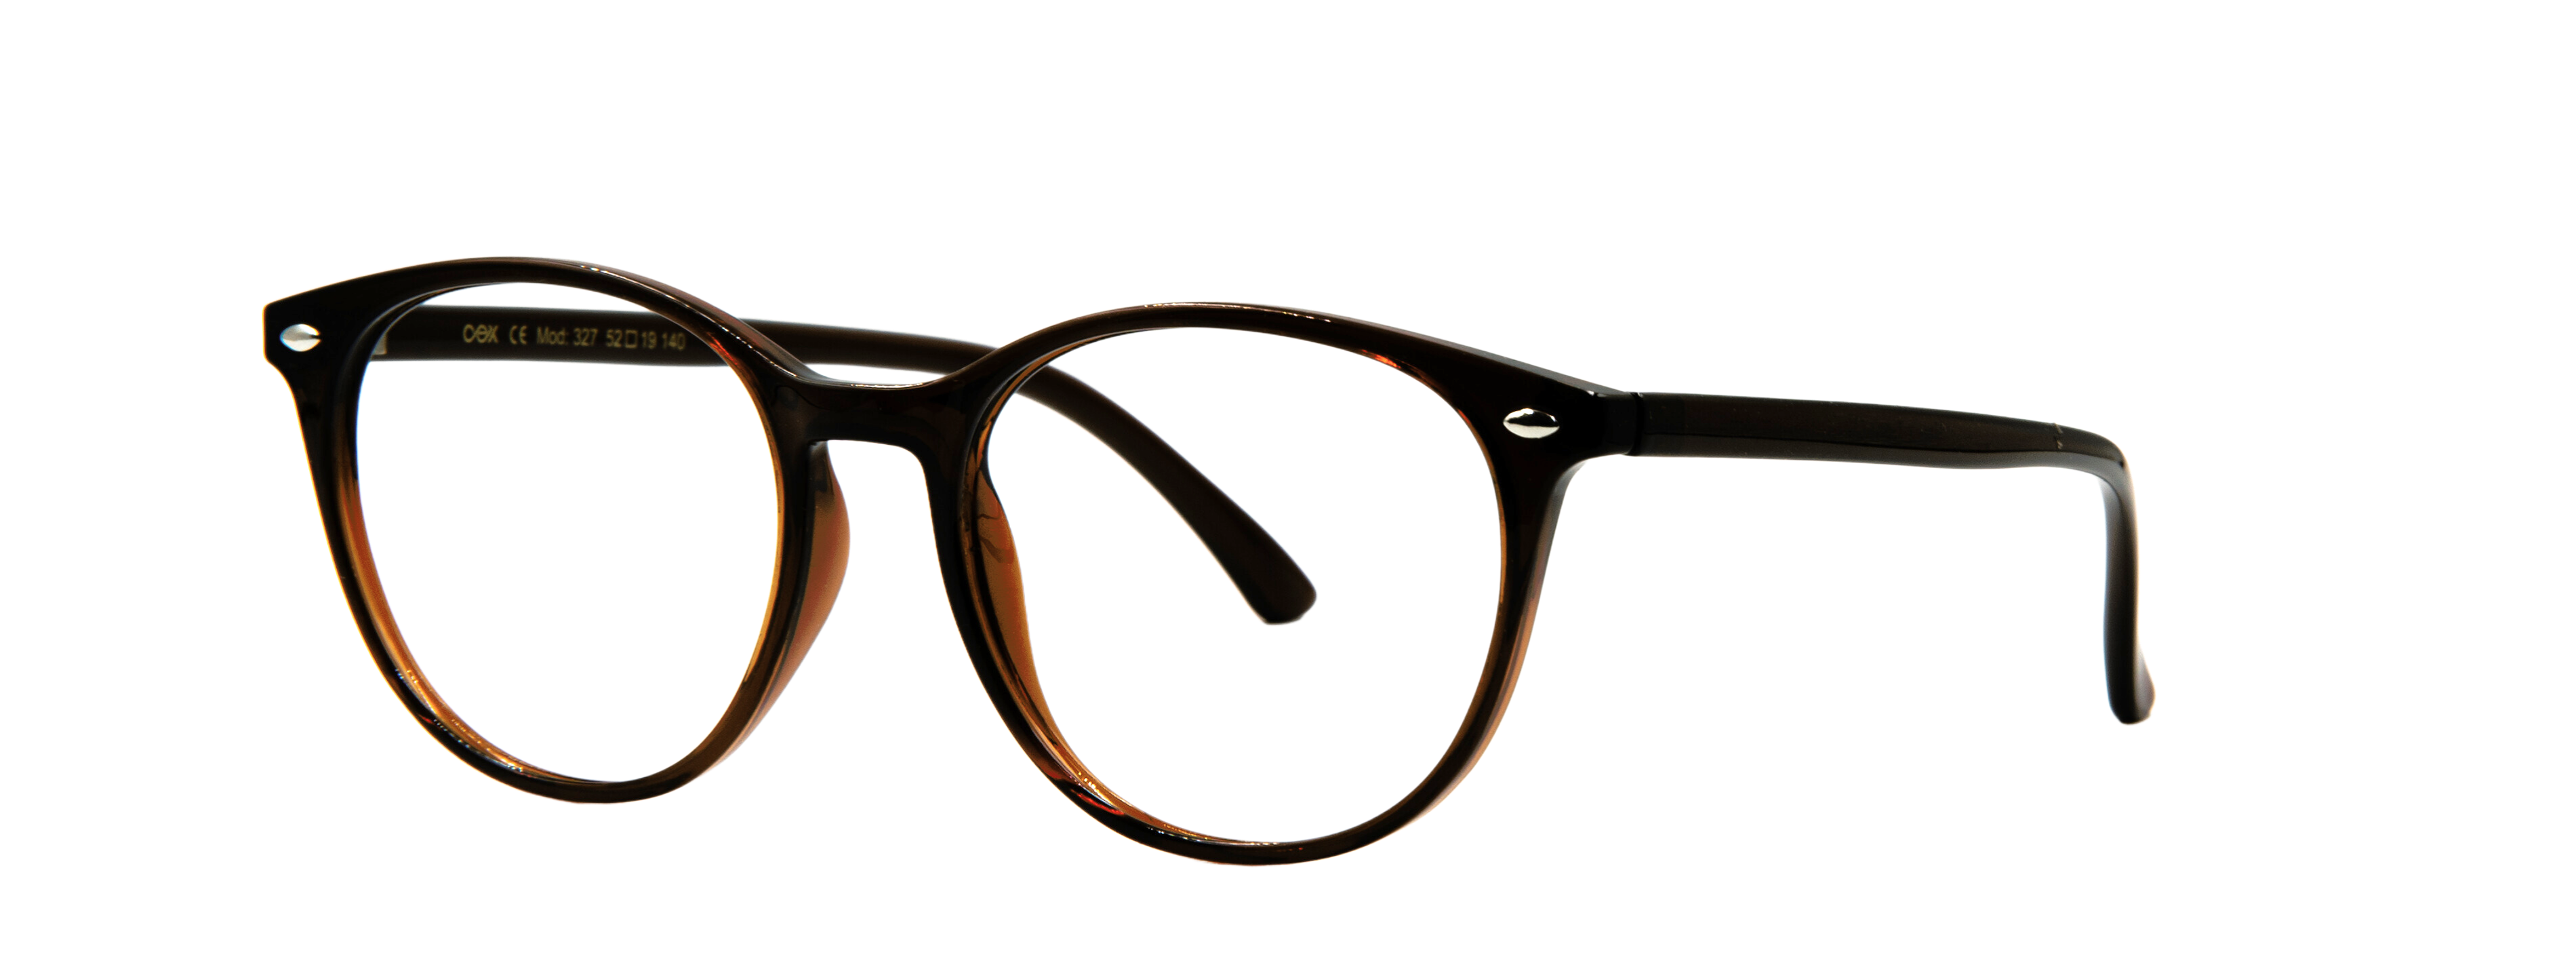  || Anatolia Ventures Optik | Erkek Gözlüğü Üretim, Kadın Gözlüğü Üretim, Çocuk Gözlüğü Üretim, Kolej Gözlüğü Üretim, Okuma Gözlüğü Üretim, Unisex Gözlüğü Üretim, Güneş Gözlüğü Üretim , Köprül Gözlüğü Üretim,  Erkek Gözlüğü, Kadın Gözlüğü, Çocuk Gözlüğü, Kolej Gözlüğü, Okuma Gözlüğü, Unisex Gözlüğü, Güneş Gözlüğü, Frenk Gözlüğü, Frenk Metal Gözlüğü, Frenk Okuma Gözlüğü, Frenk Güneş Gözlüğü, Köprül Gözlüğü